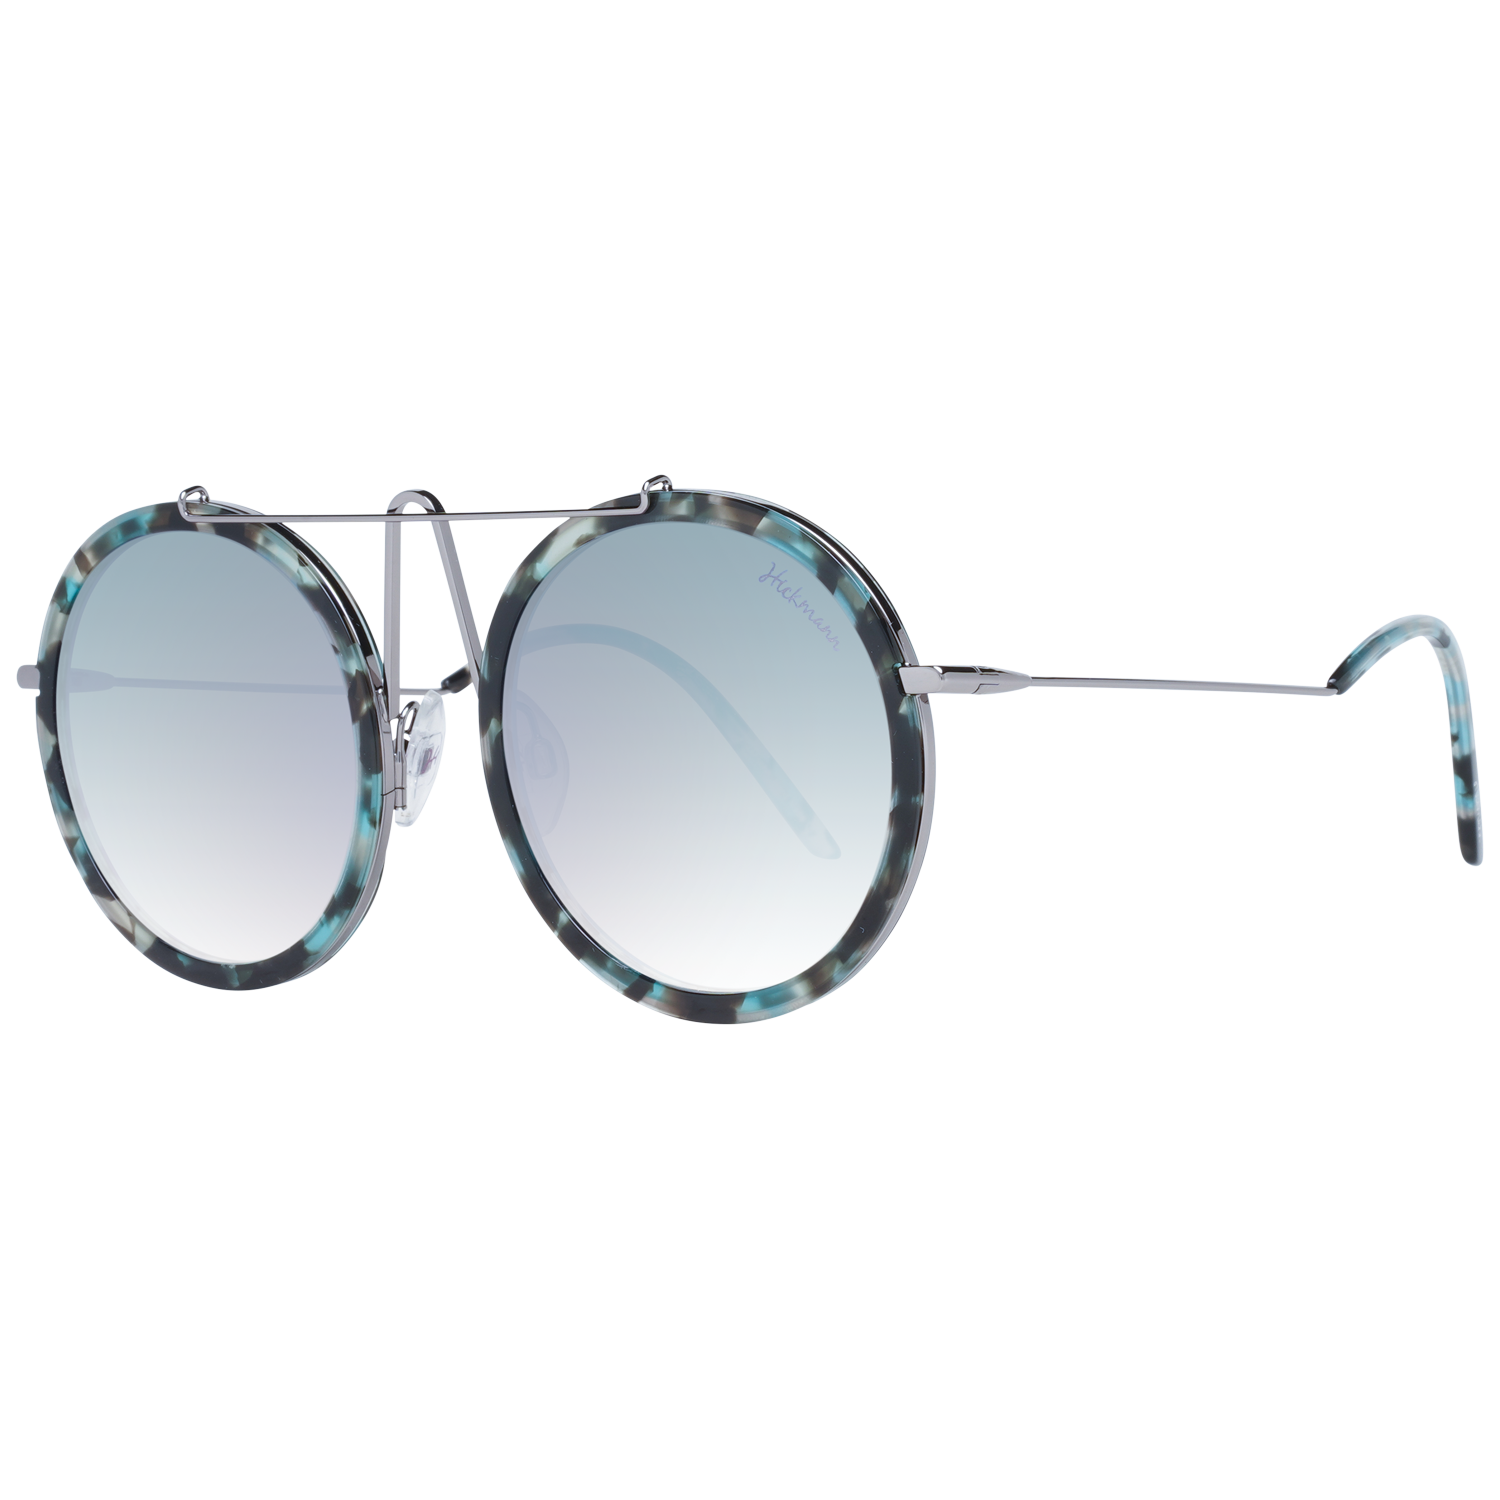 Dámské sluneční brýle Ana Hickmann HI3069 G22 55